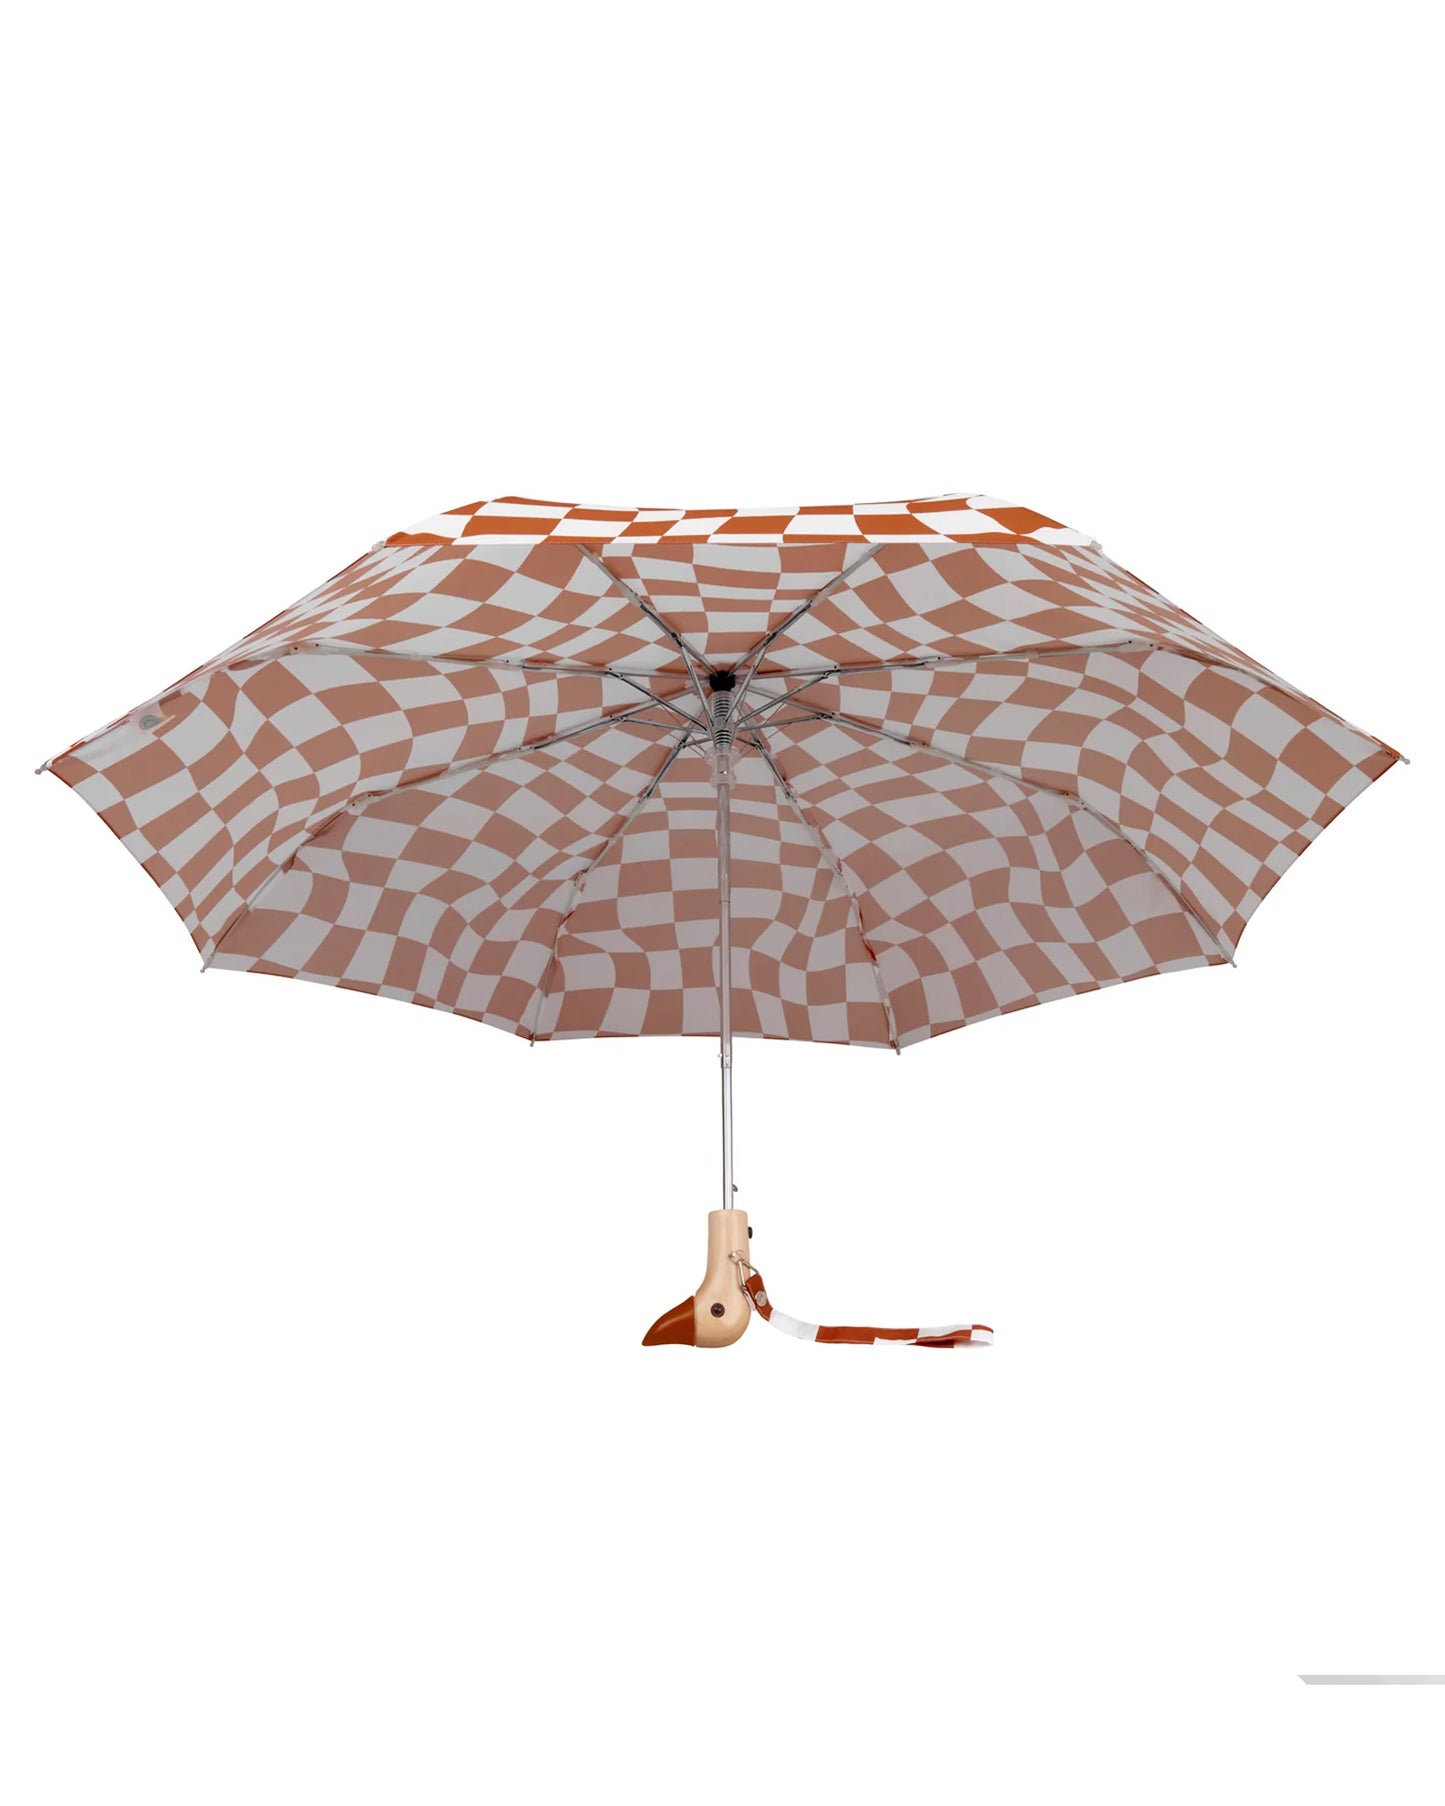 ORIGINAL DUCKHEAD Compact Umbrella in Peanut Butter Checkers